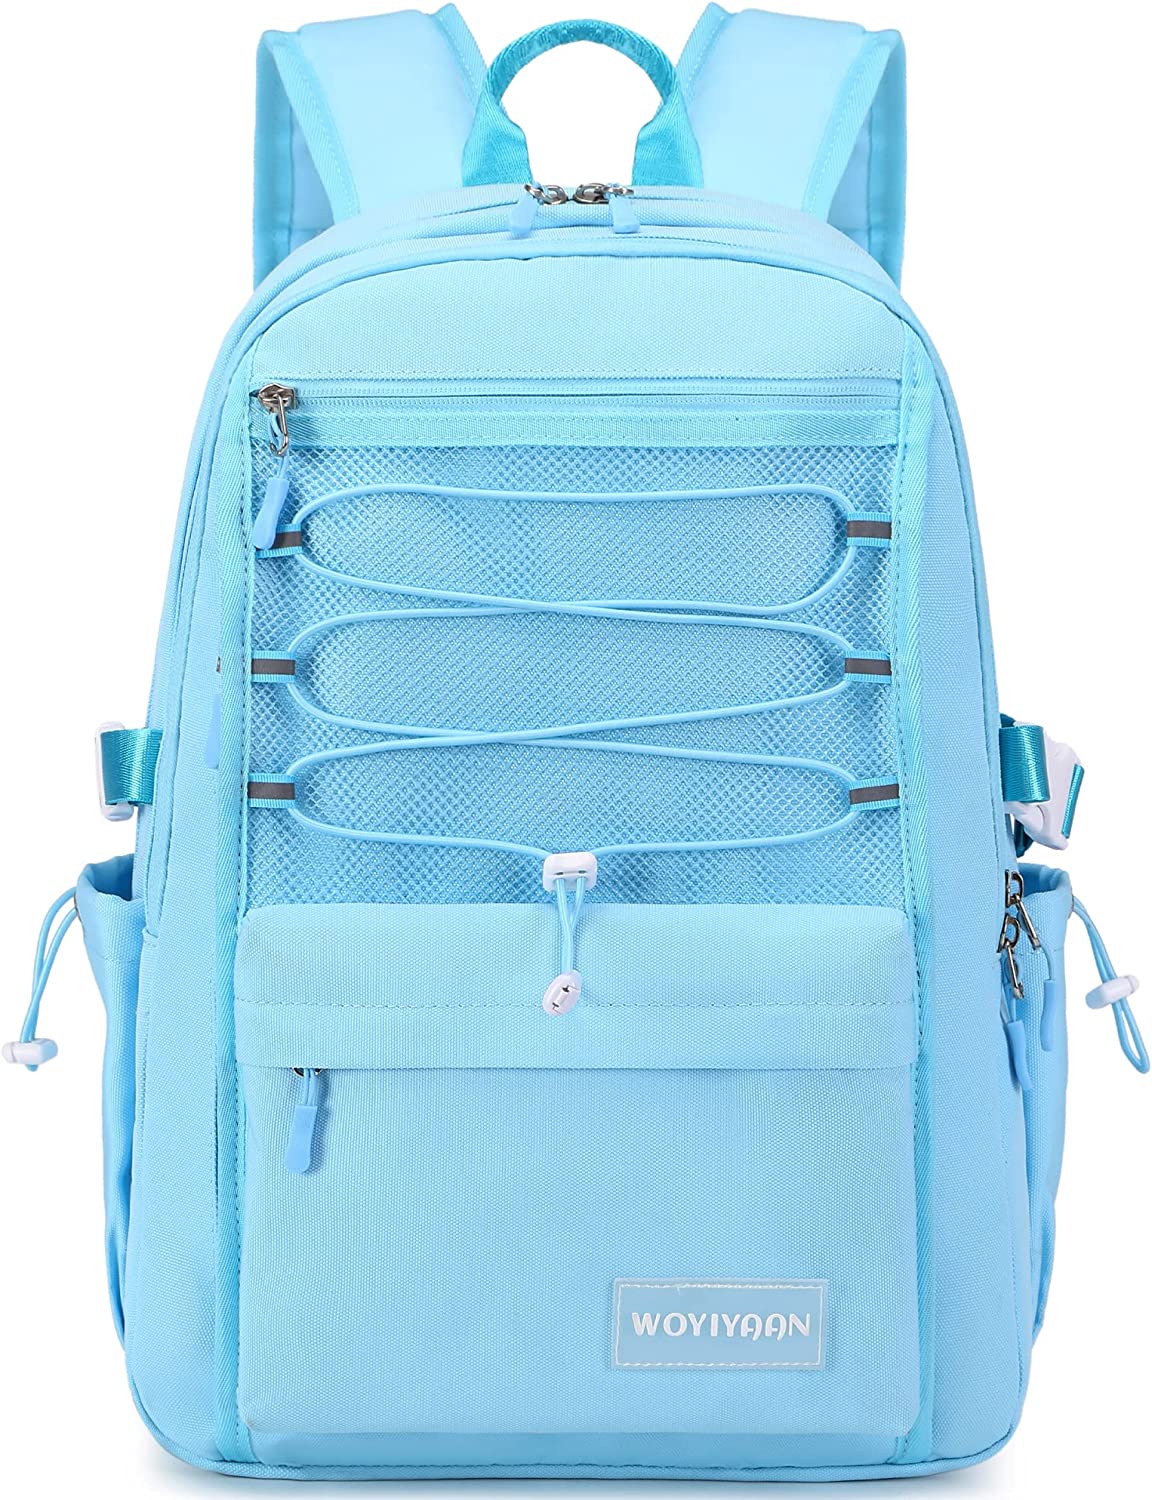 Woyiyaan Laptop Backpack for Women Girls 15.6 Inch [...]